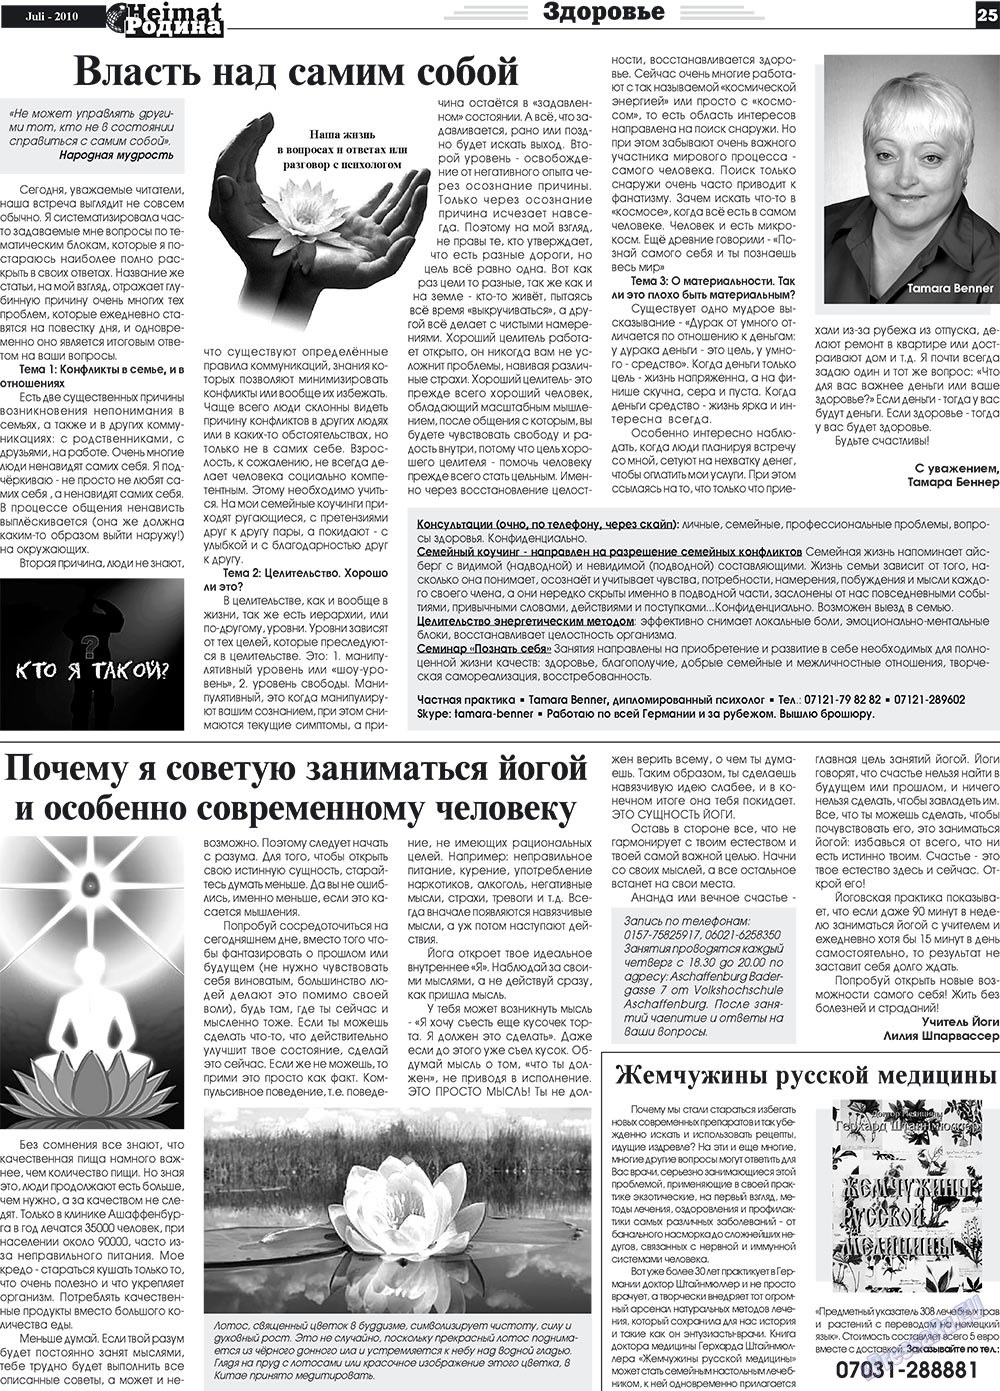 Heimat-Родина (газета). 2010 год, номер 7, стр. 25